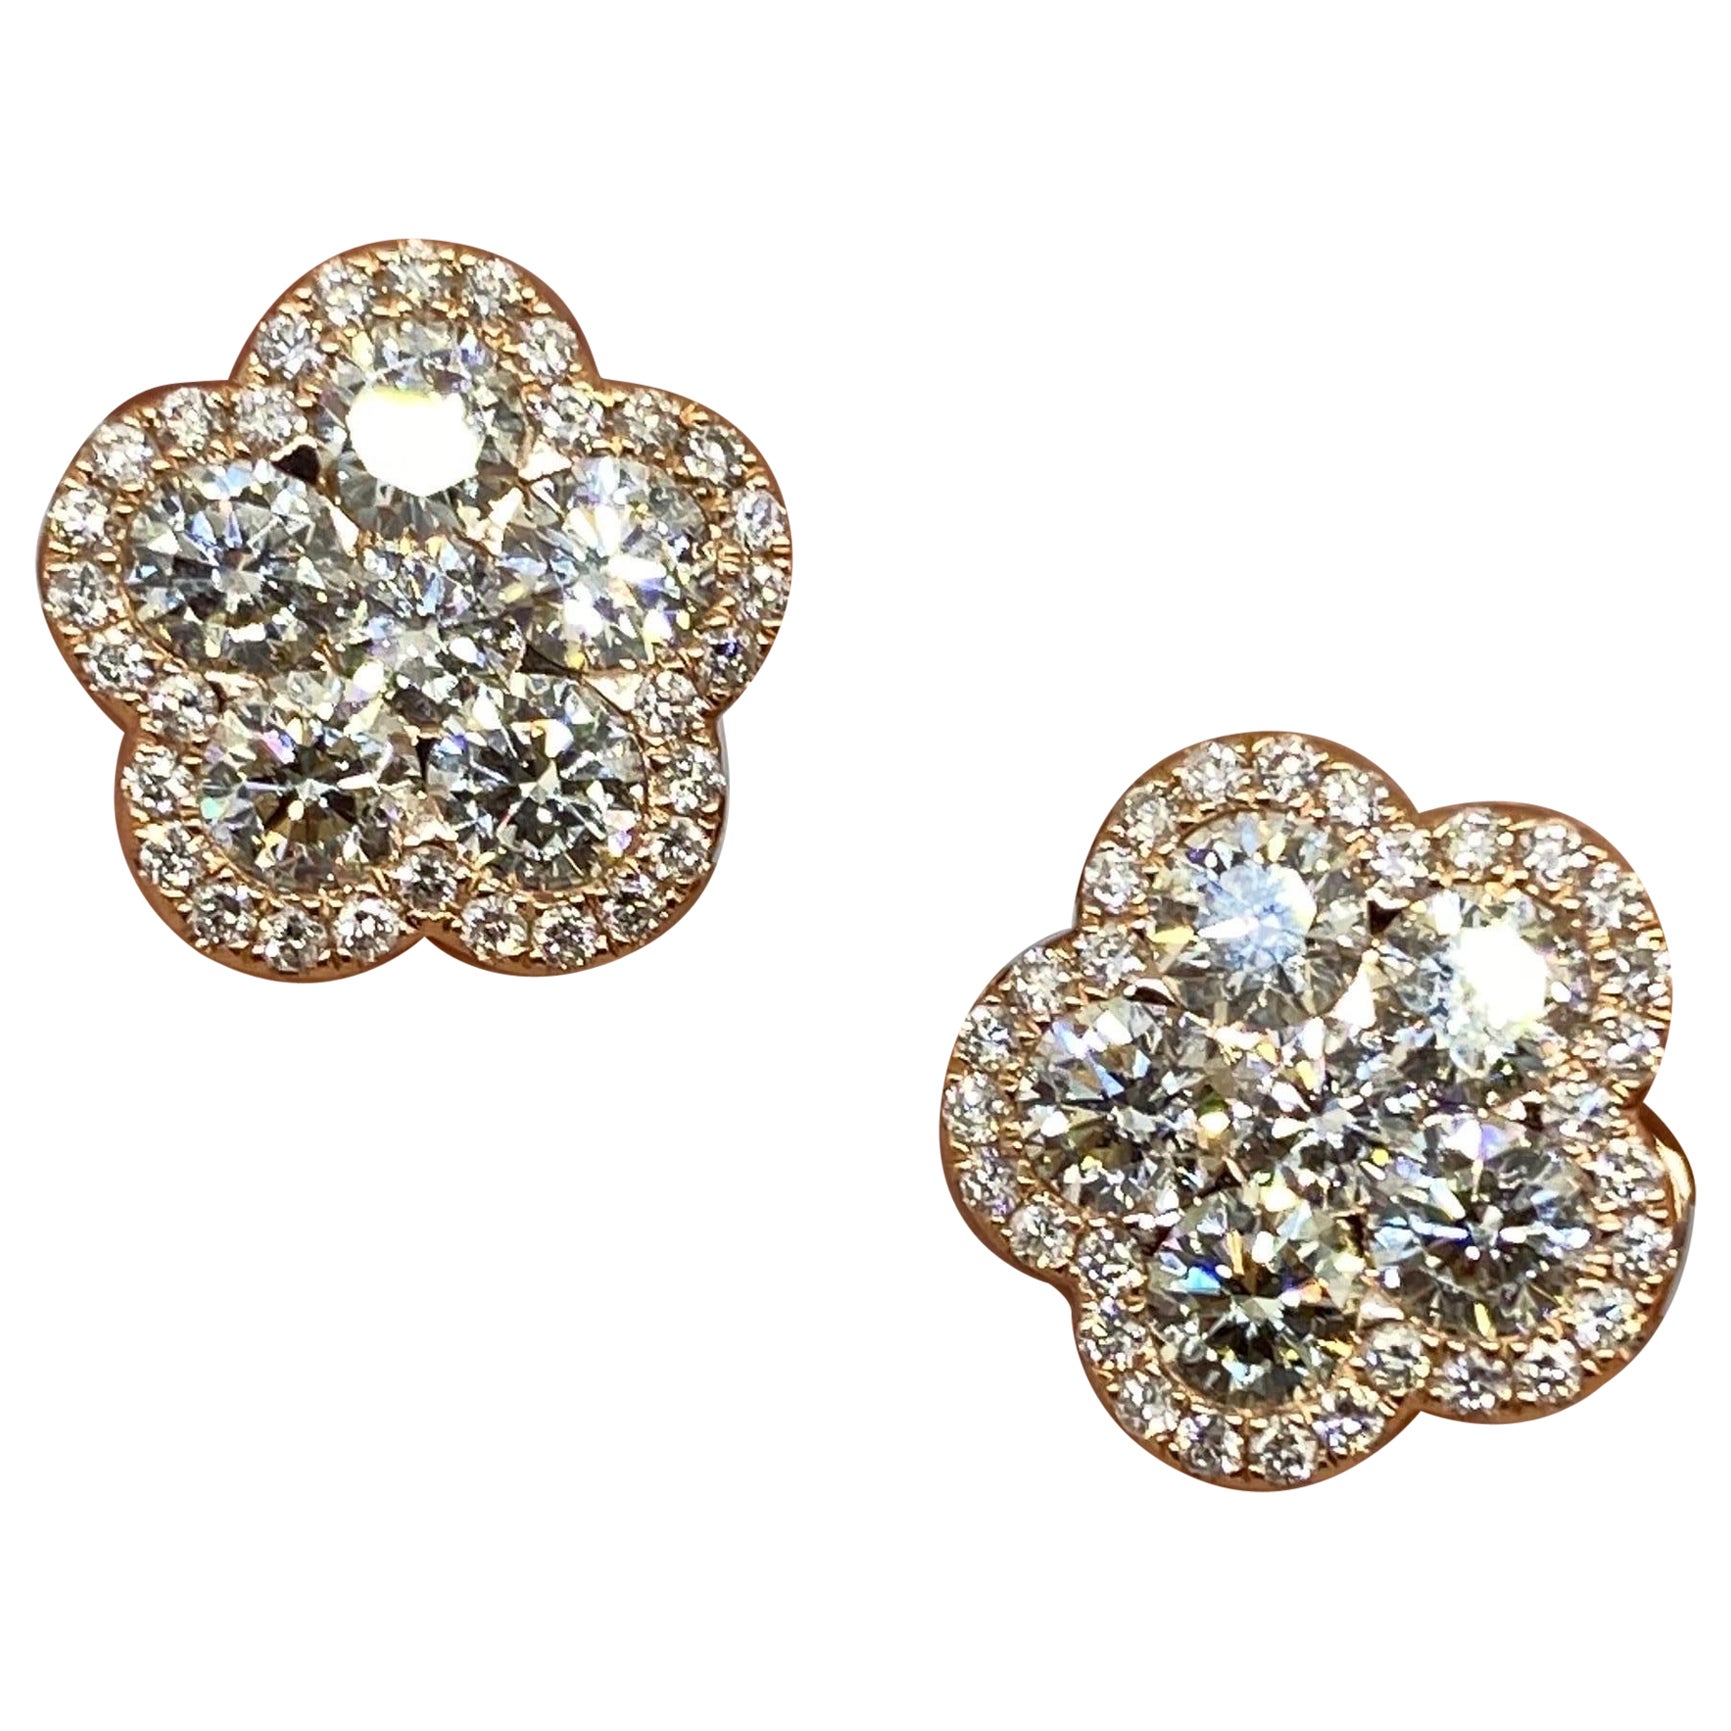 18K Rose Gold Diamond Earring 